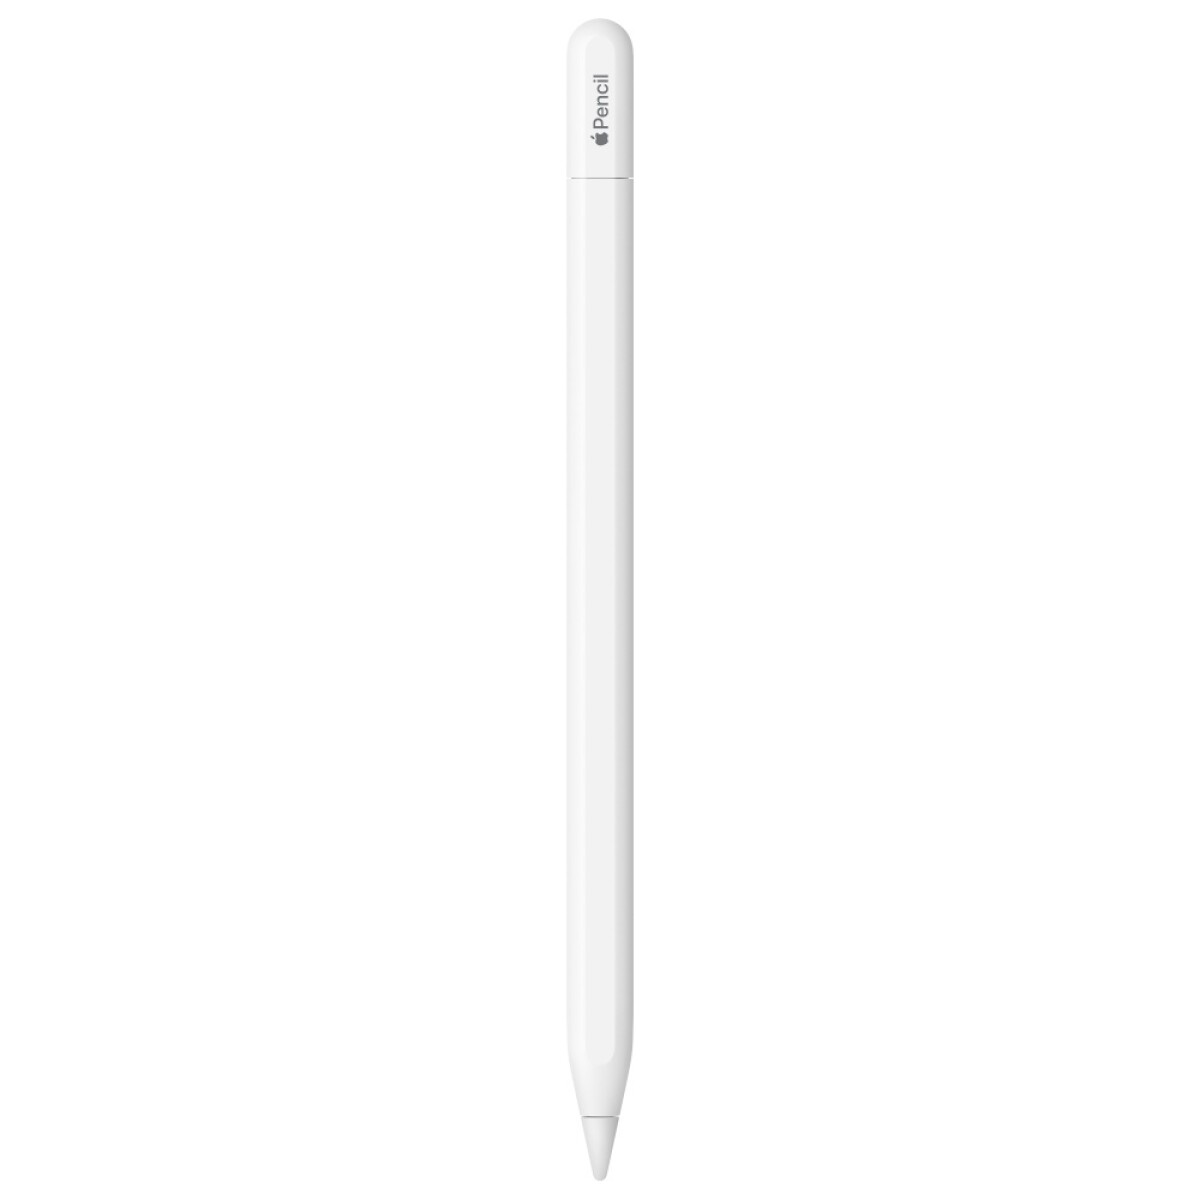 Apple Pencil Usb-c MUWA3AM/A - 001 